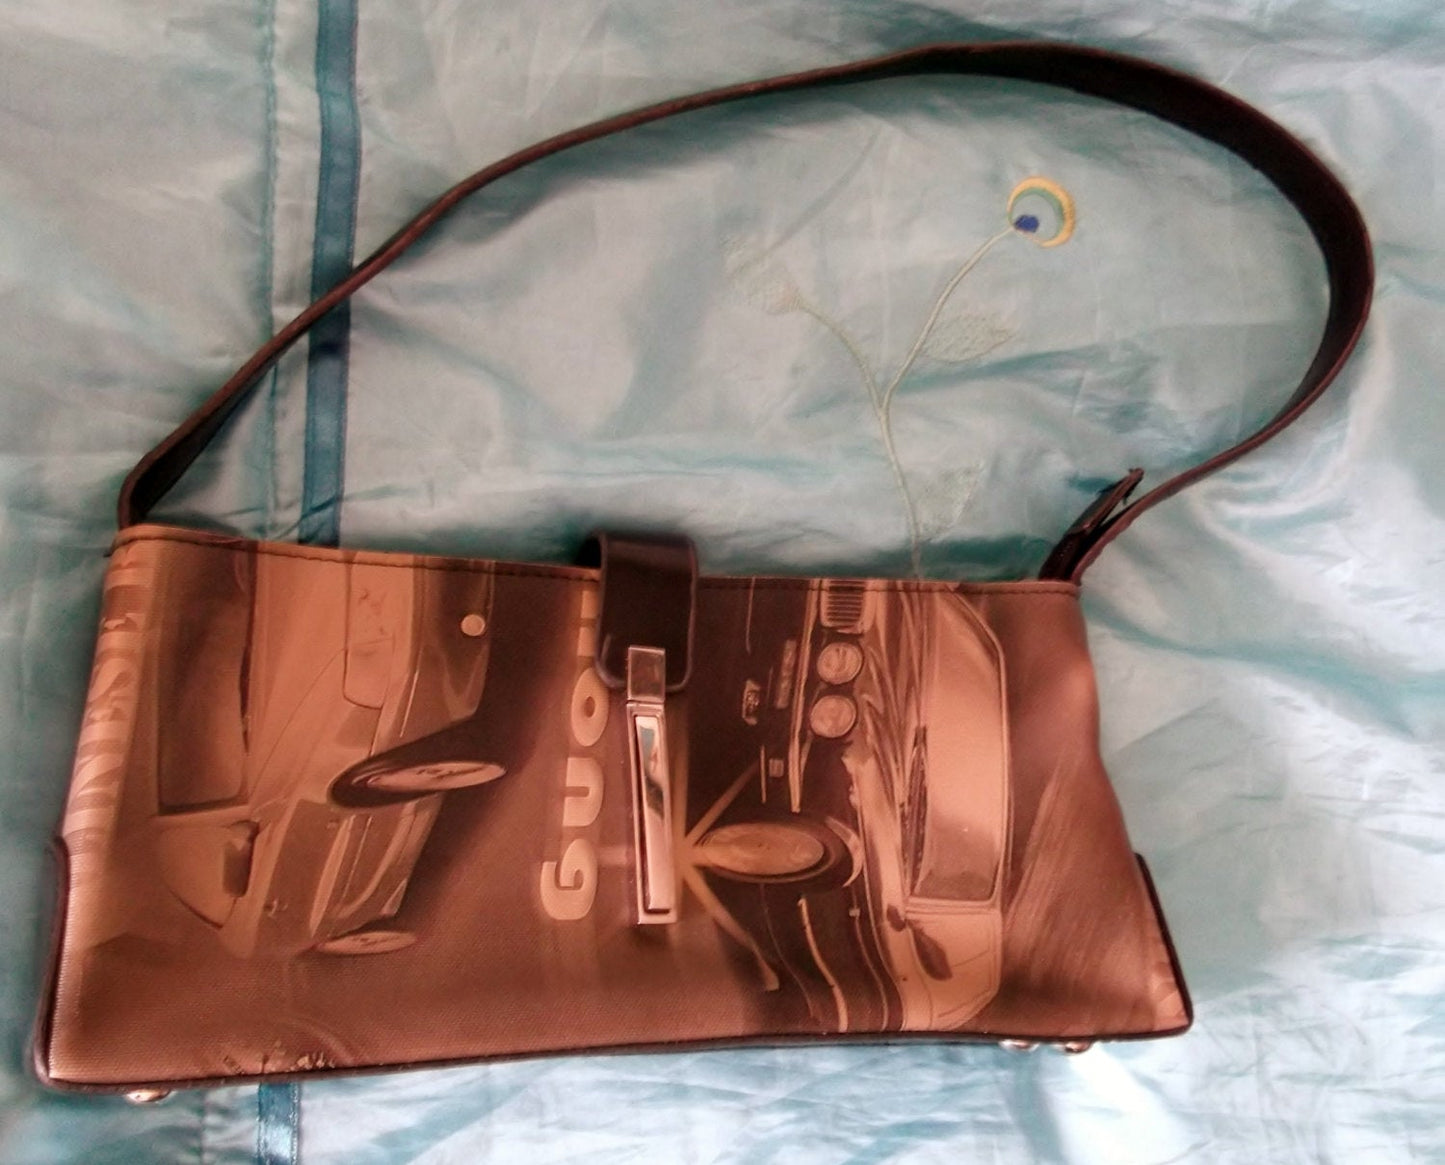 Retro Chic Vintage handbag with 50's style image design, gold clasp. Wonkey Donkey Bazaar